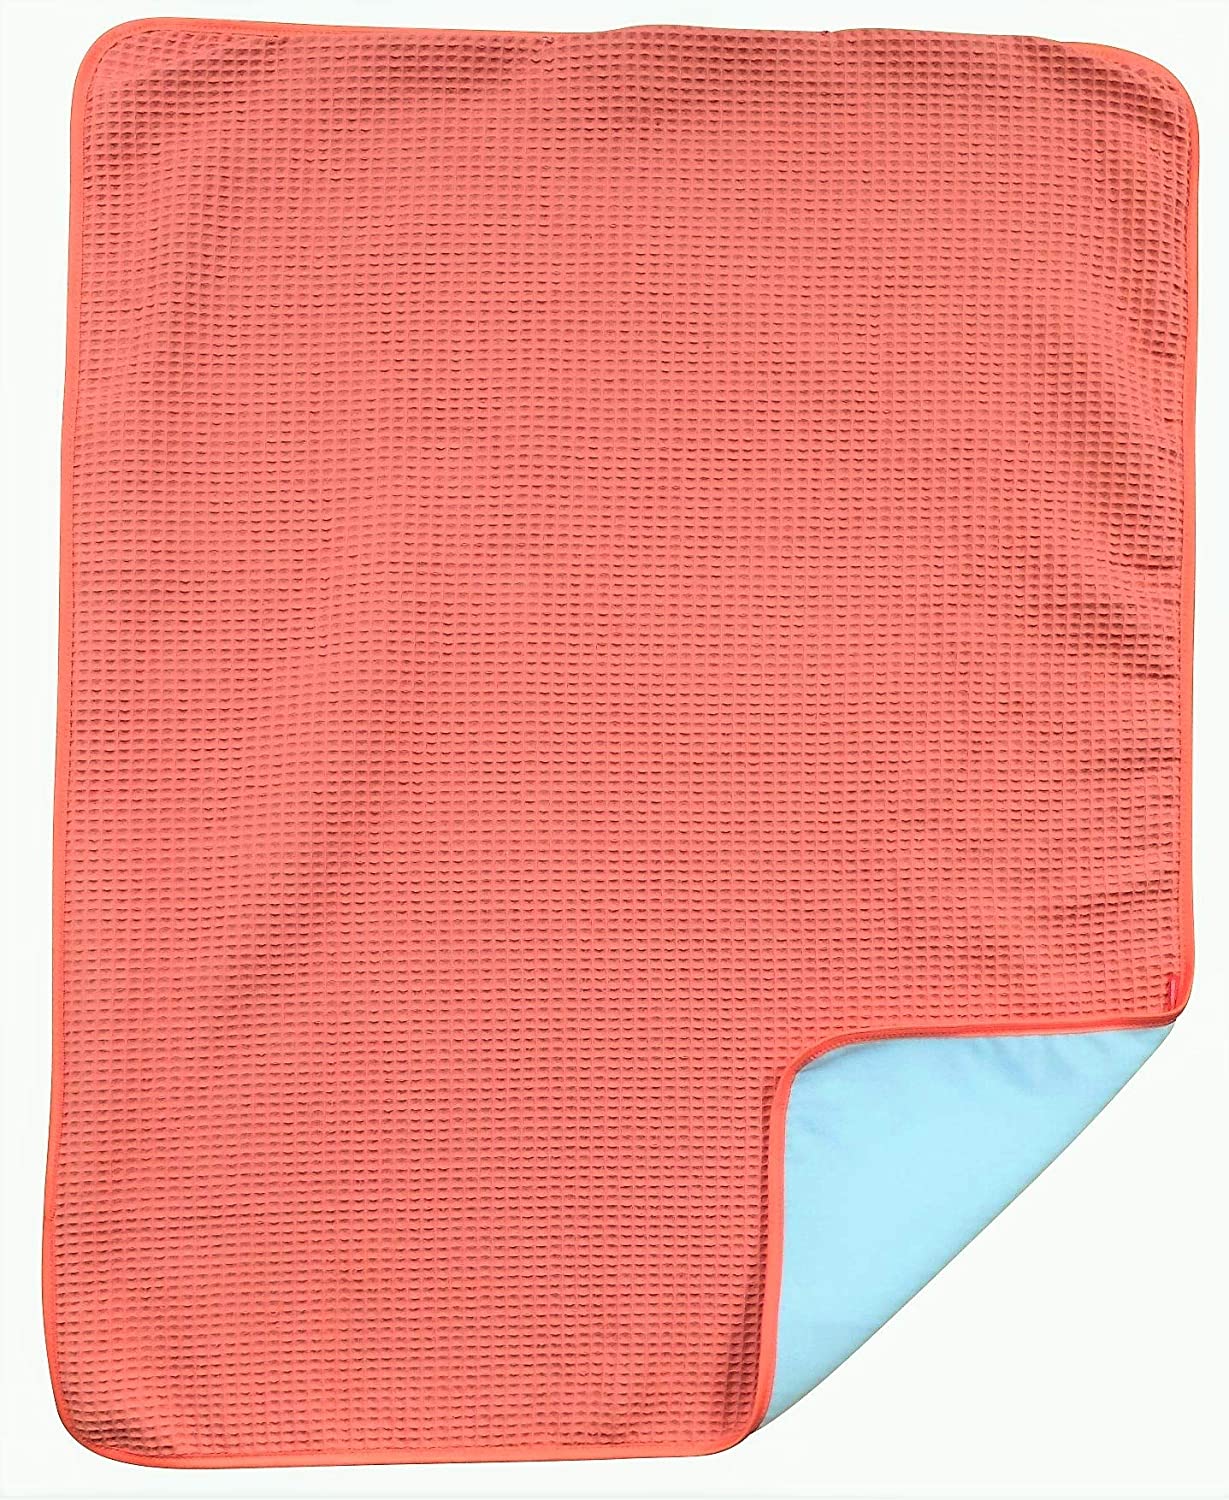 Ideenreich 2570 IDEENREICH 2570 Baby Blanket Salmon 70 x 90 cm Orange